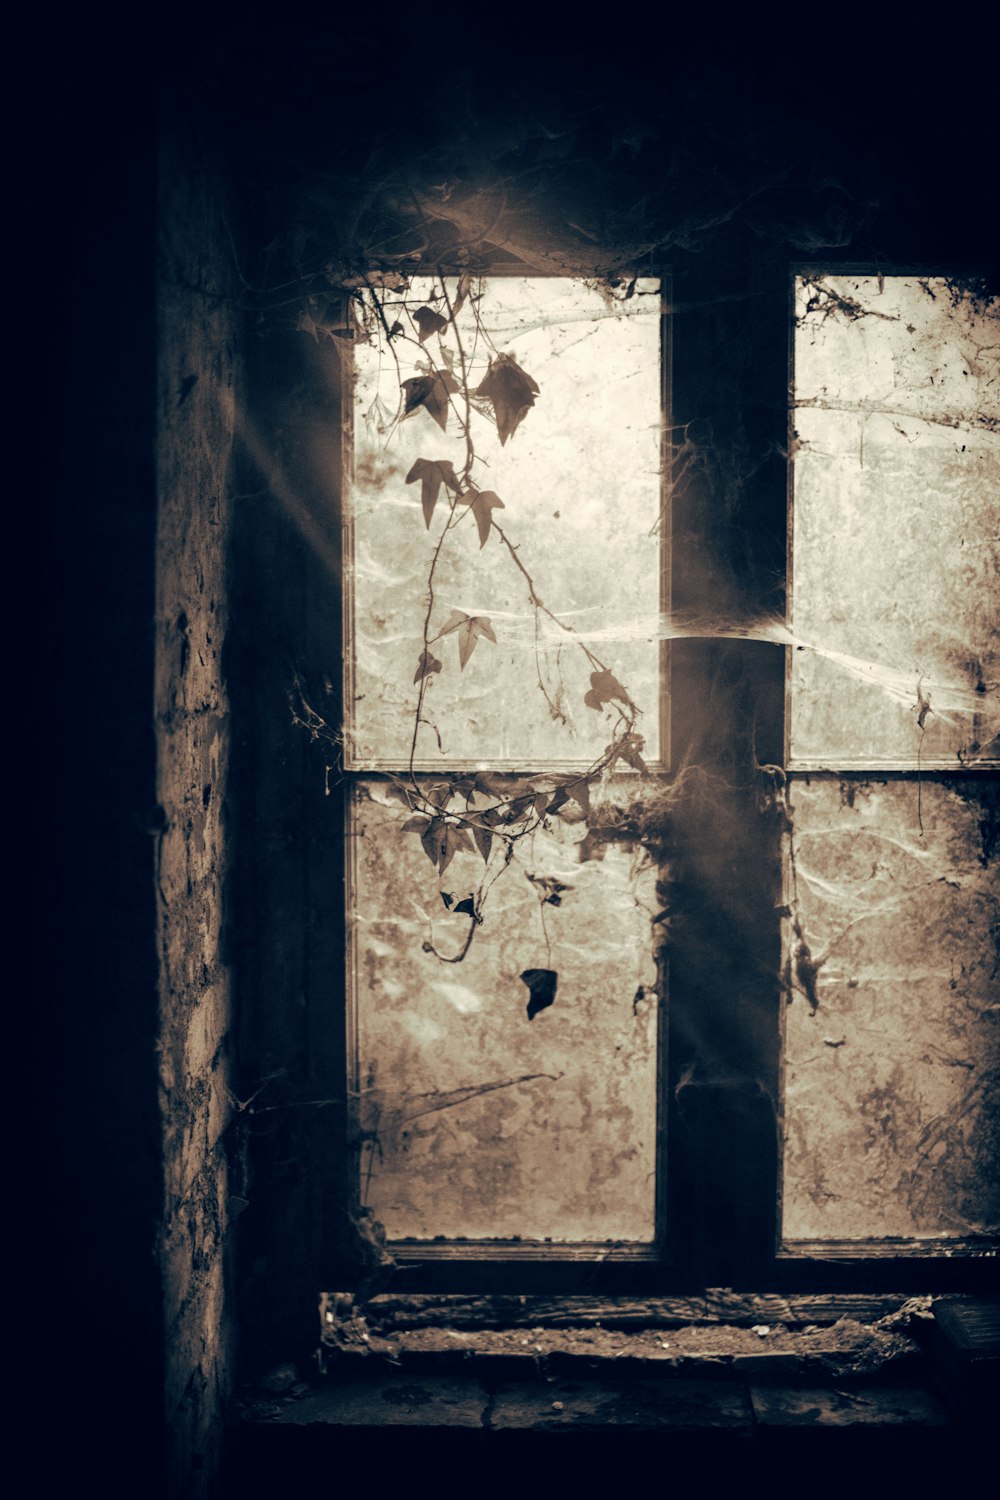 Foto in scala di grigi della finestra chiusa con ragnatele e piante